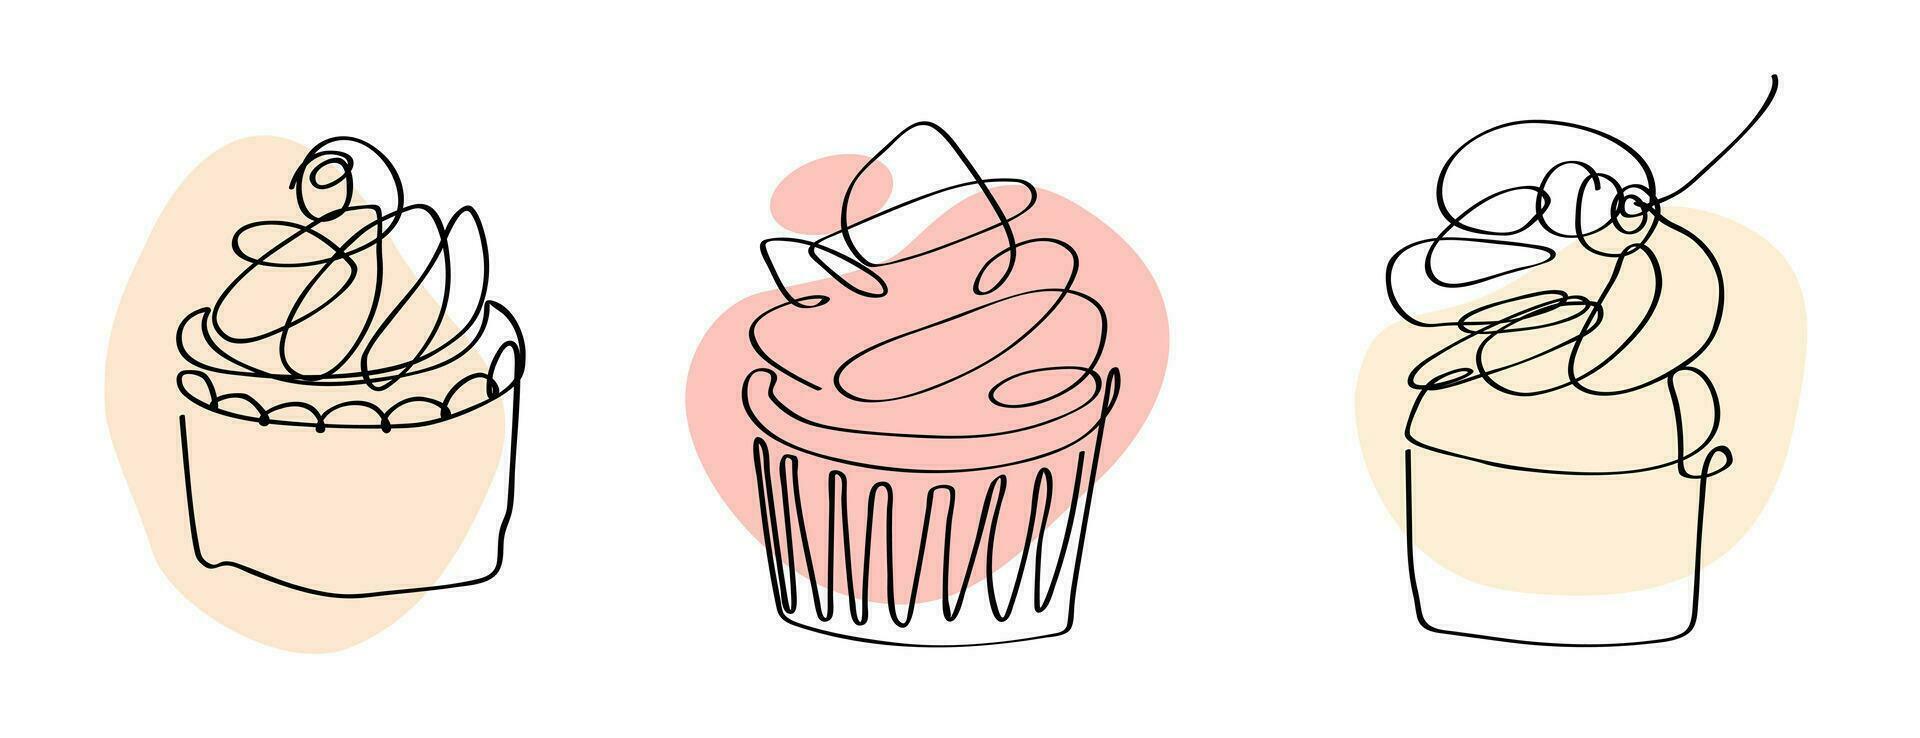 uppsättning av abstrakt cupcakes. vektor illustration, minimalism, ett kontinuerlig linje, skiss, teckning. symbol, emblem, logotyp, design element för förpackning, etiketter